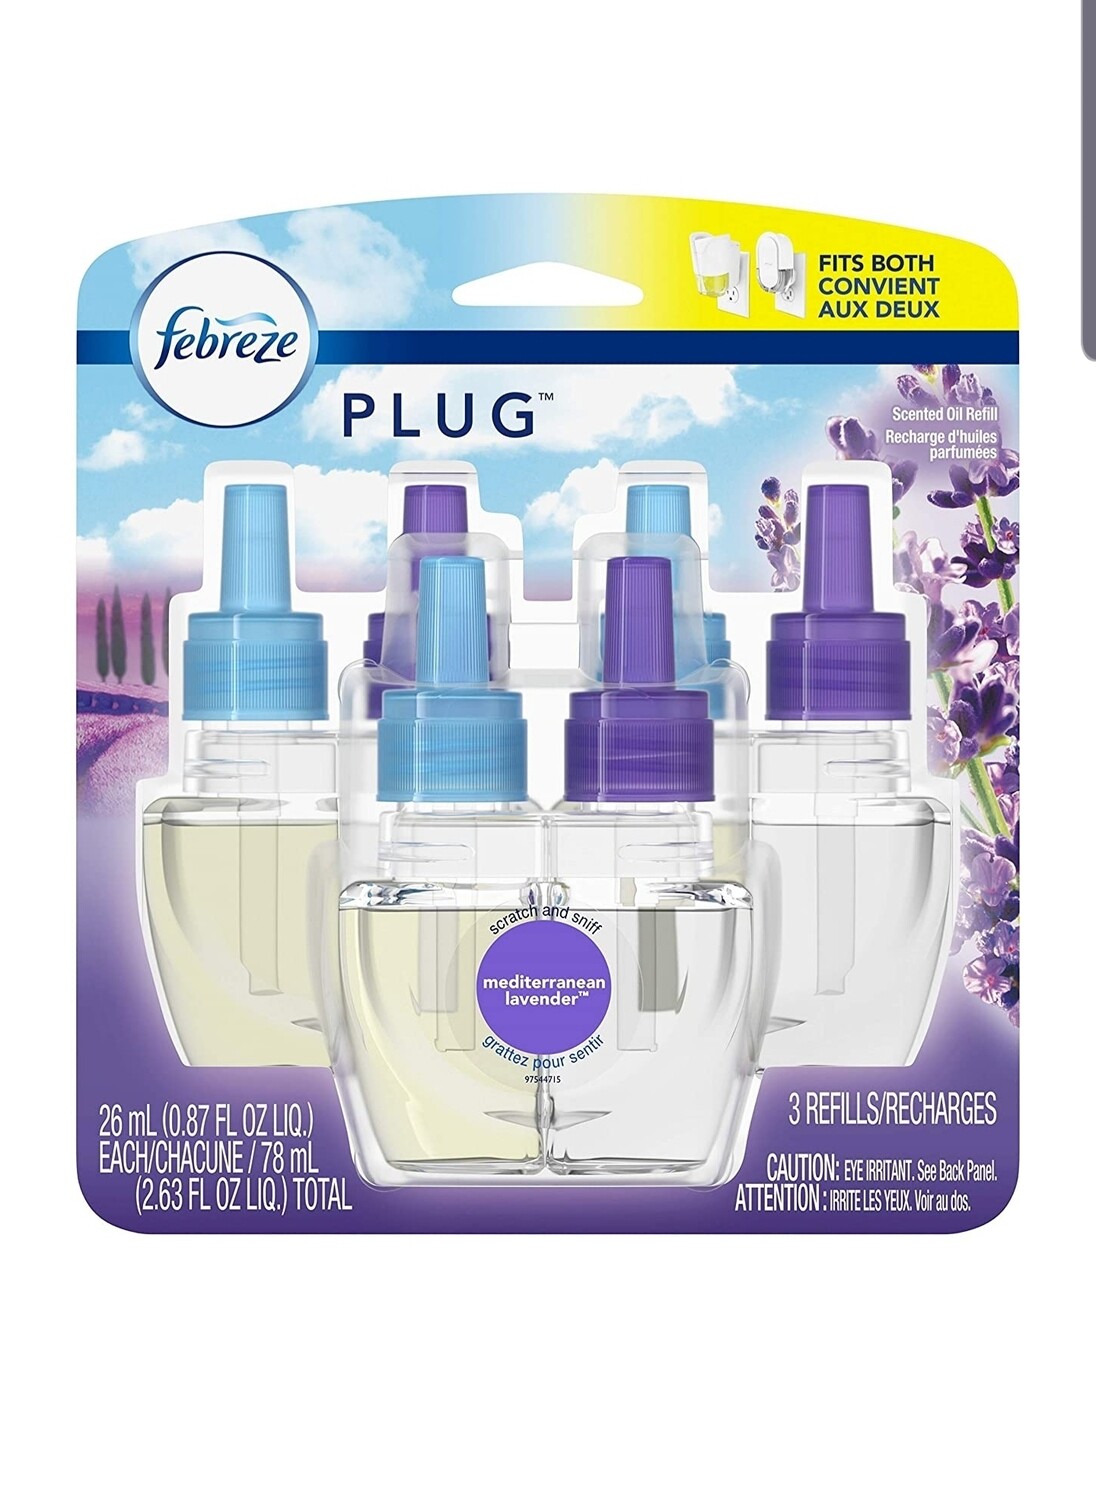 Febreze Home Fragrance Refill per bottle- Mediterranean lavender